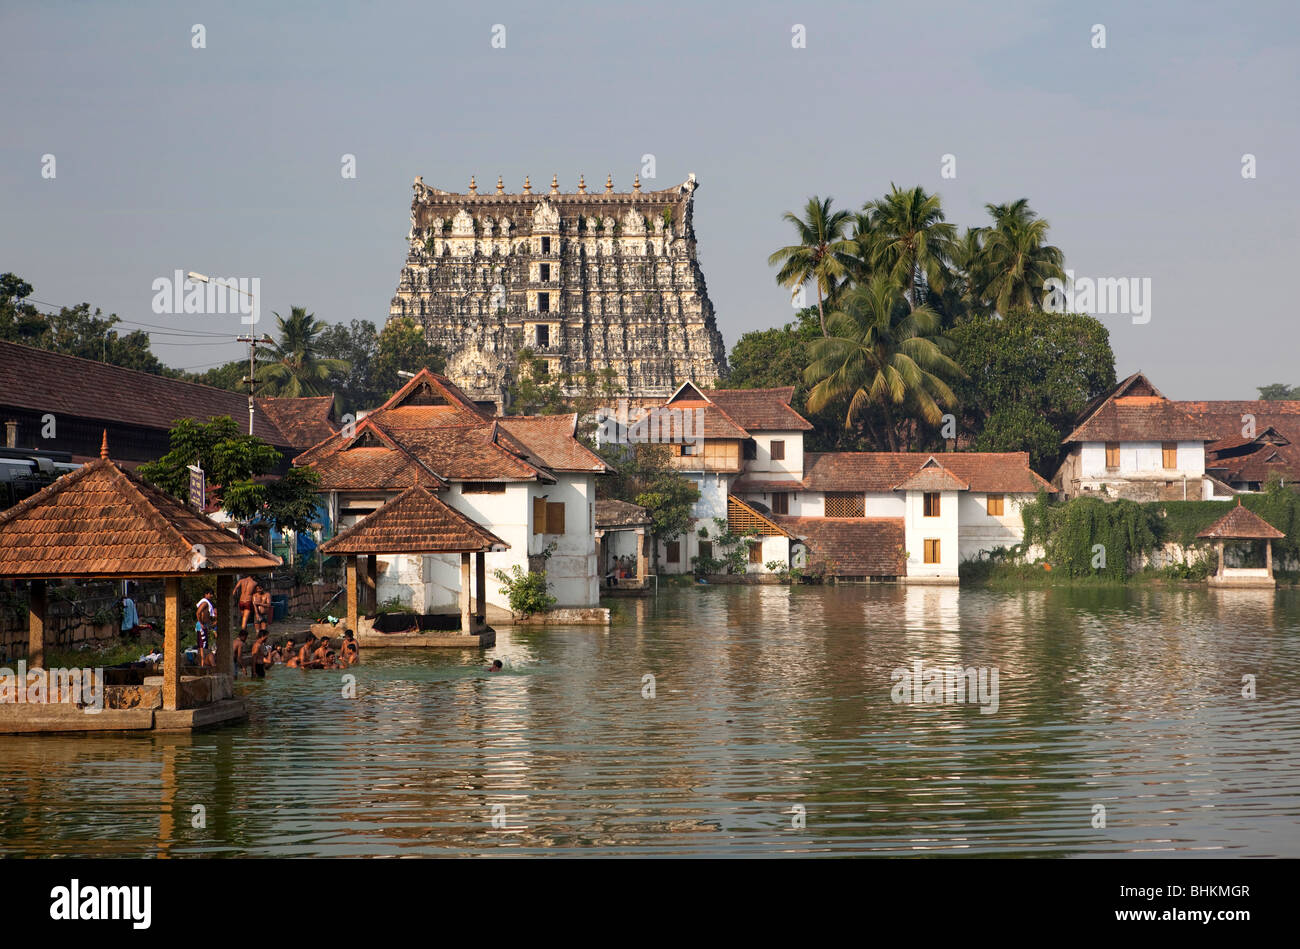 India, Kerala, Thiruvananthapuram, (Trivandrum), Sri Padmanabhaswamy Hindu Temple across tank Stock Photo